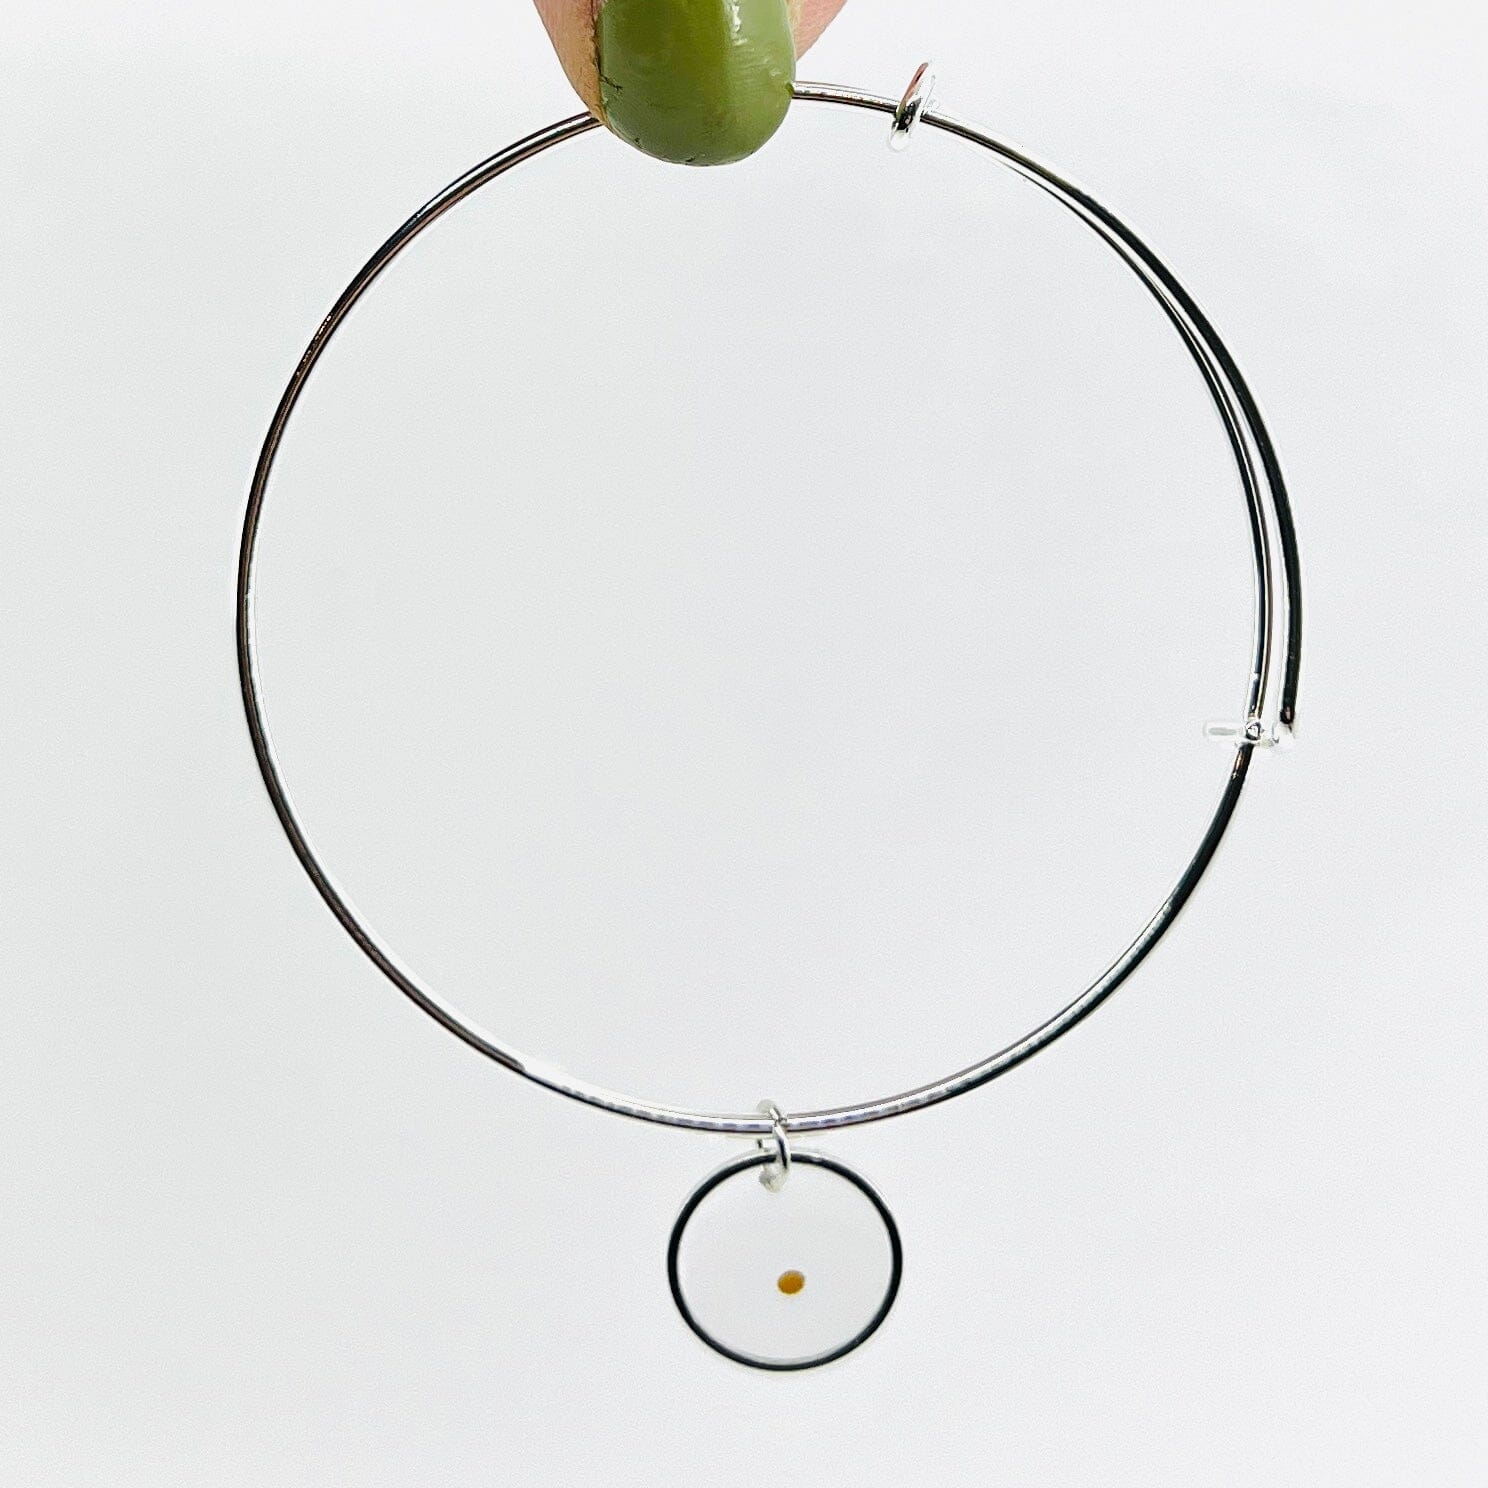 Mustard Seed Wire Bracelet Jewelry - 